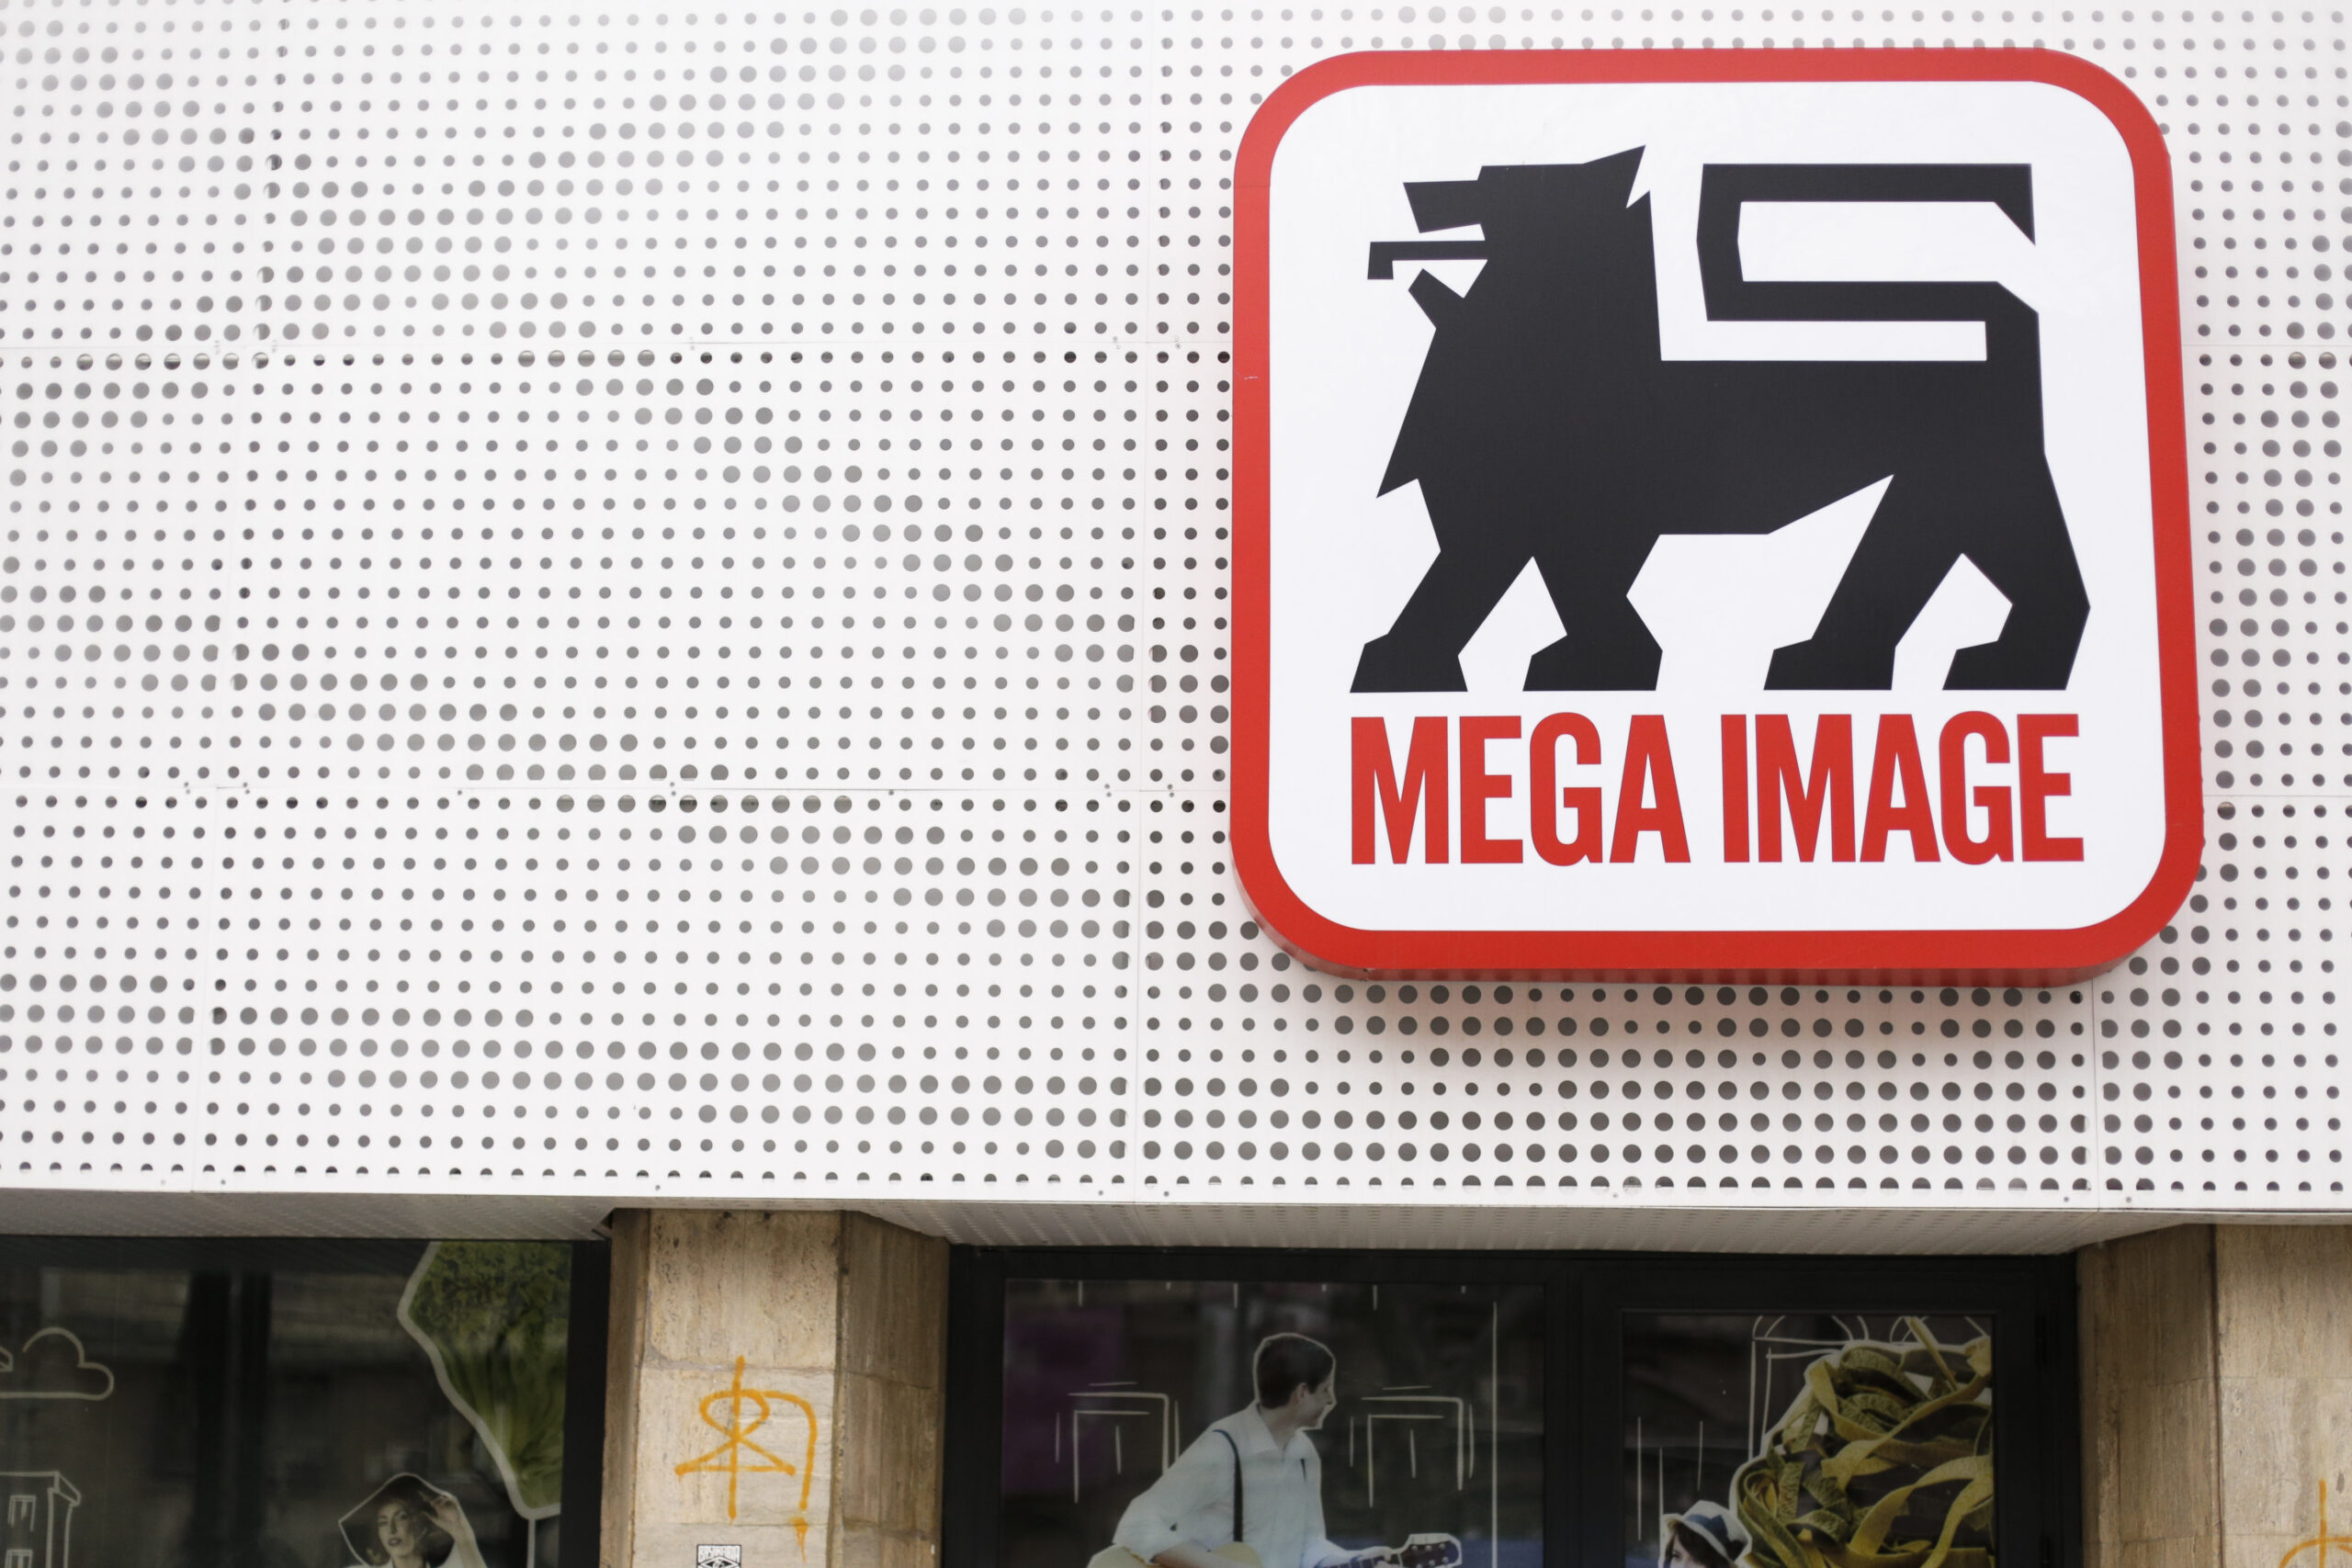  Mega Image cumpără rețeaua Profi în România